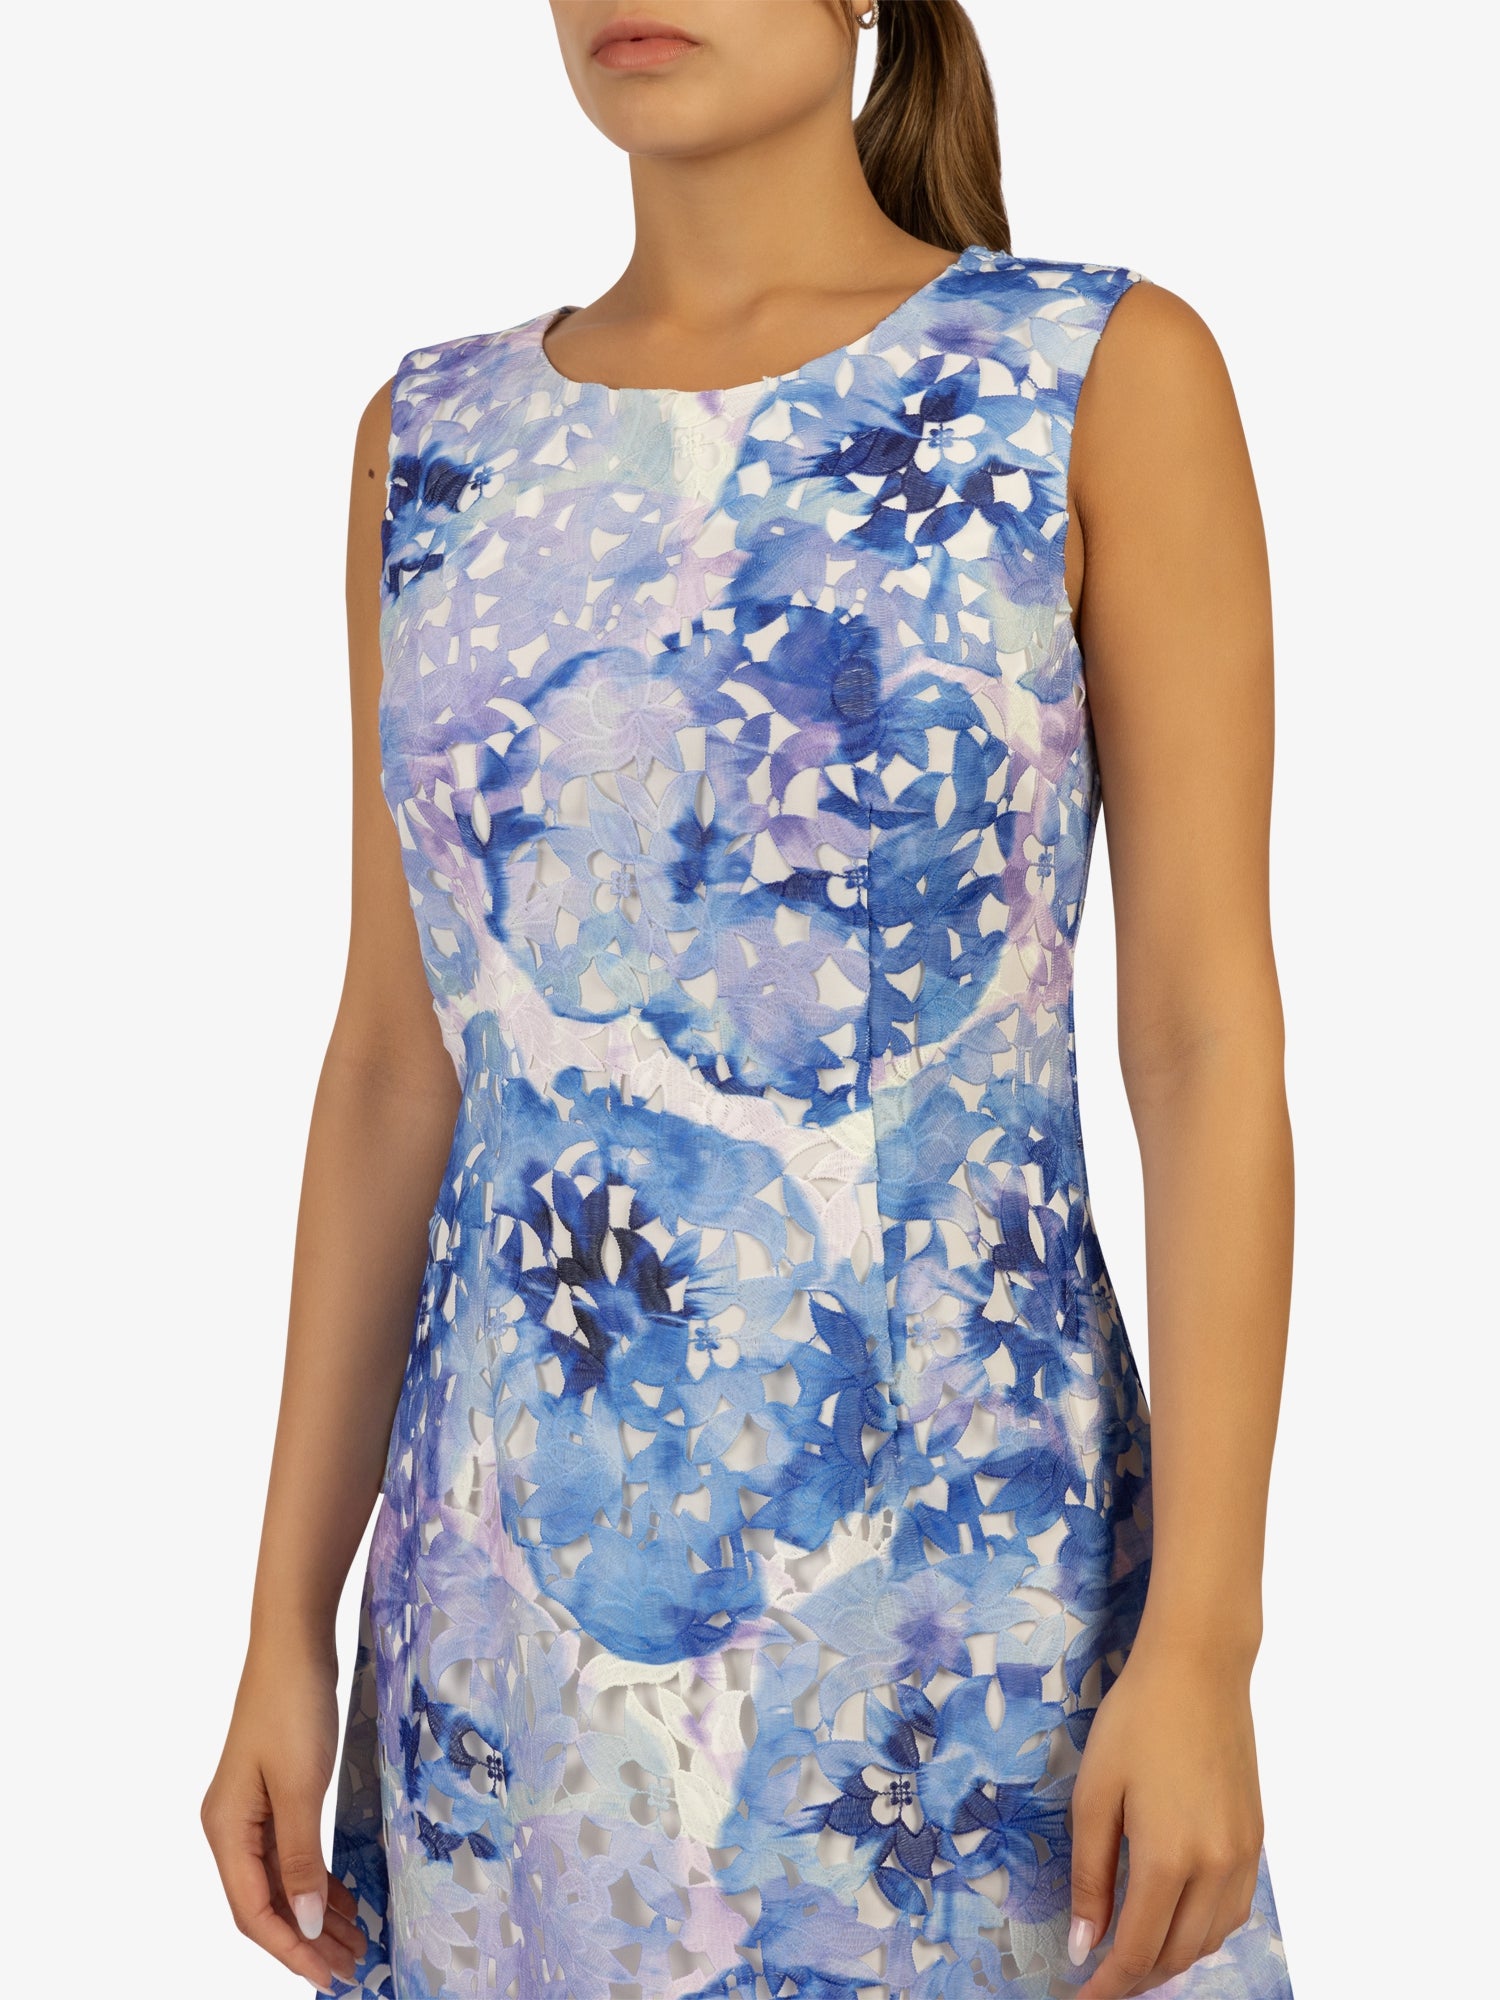 APART Bedrucktes Sommerkleid in leichter A- Linienform aus allover bedruckter Spitze | blau-multicolor